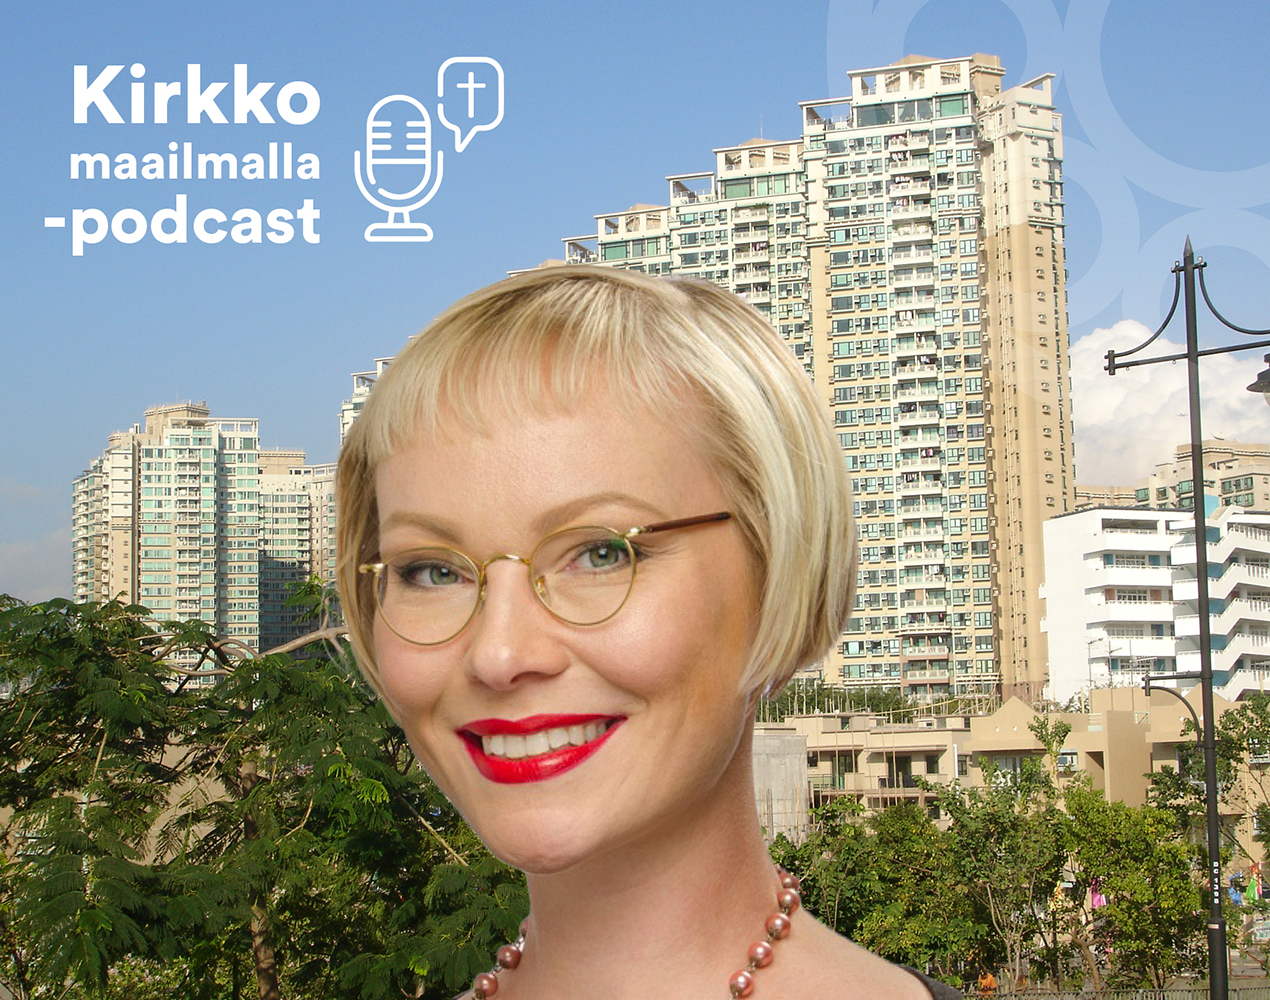 Kirkko maailmalla -podcastissa haastateltavana Ilse Paakkinen.